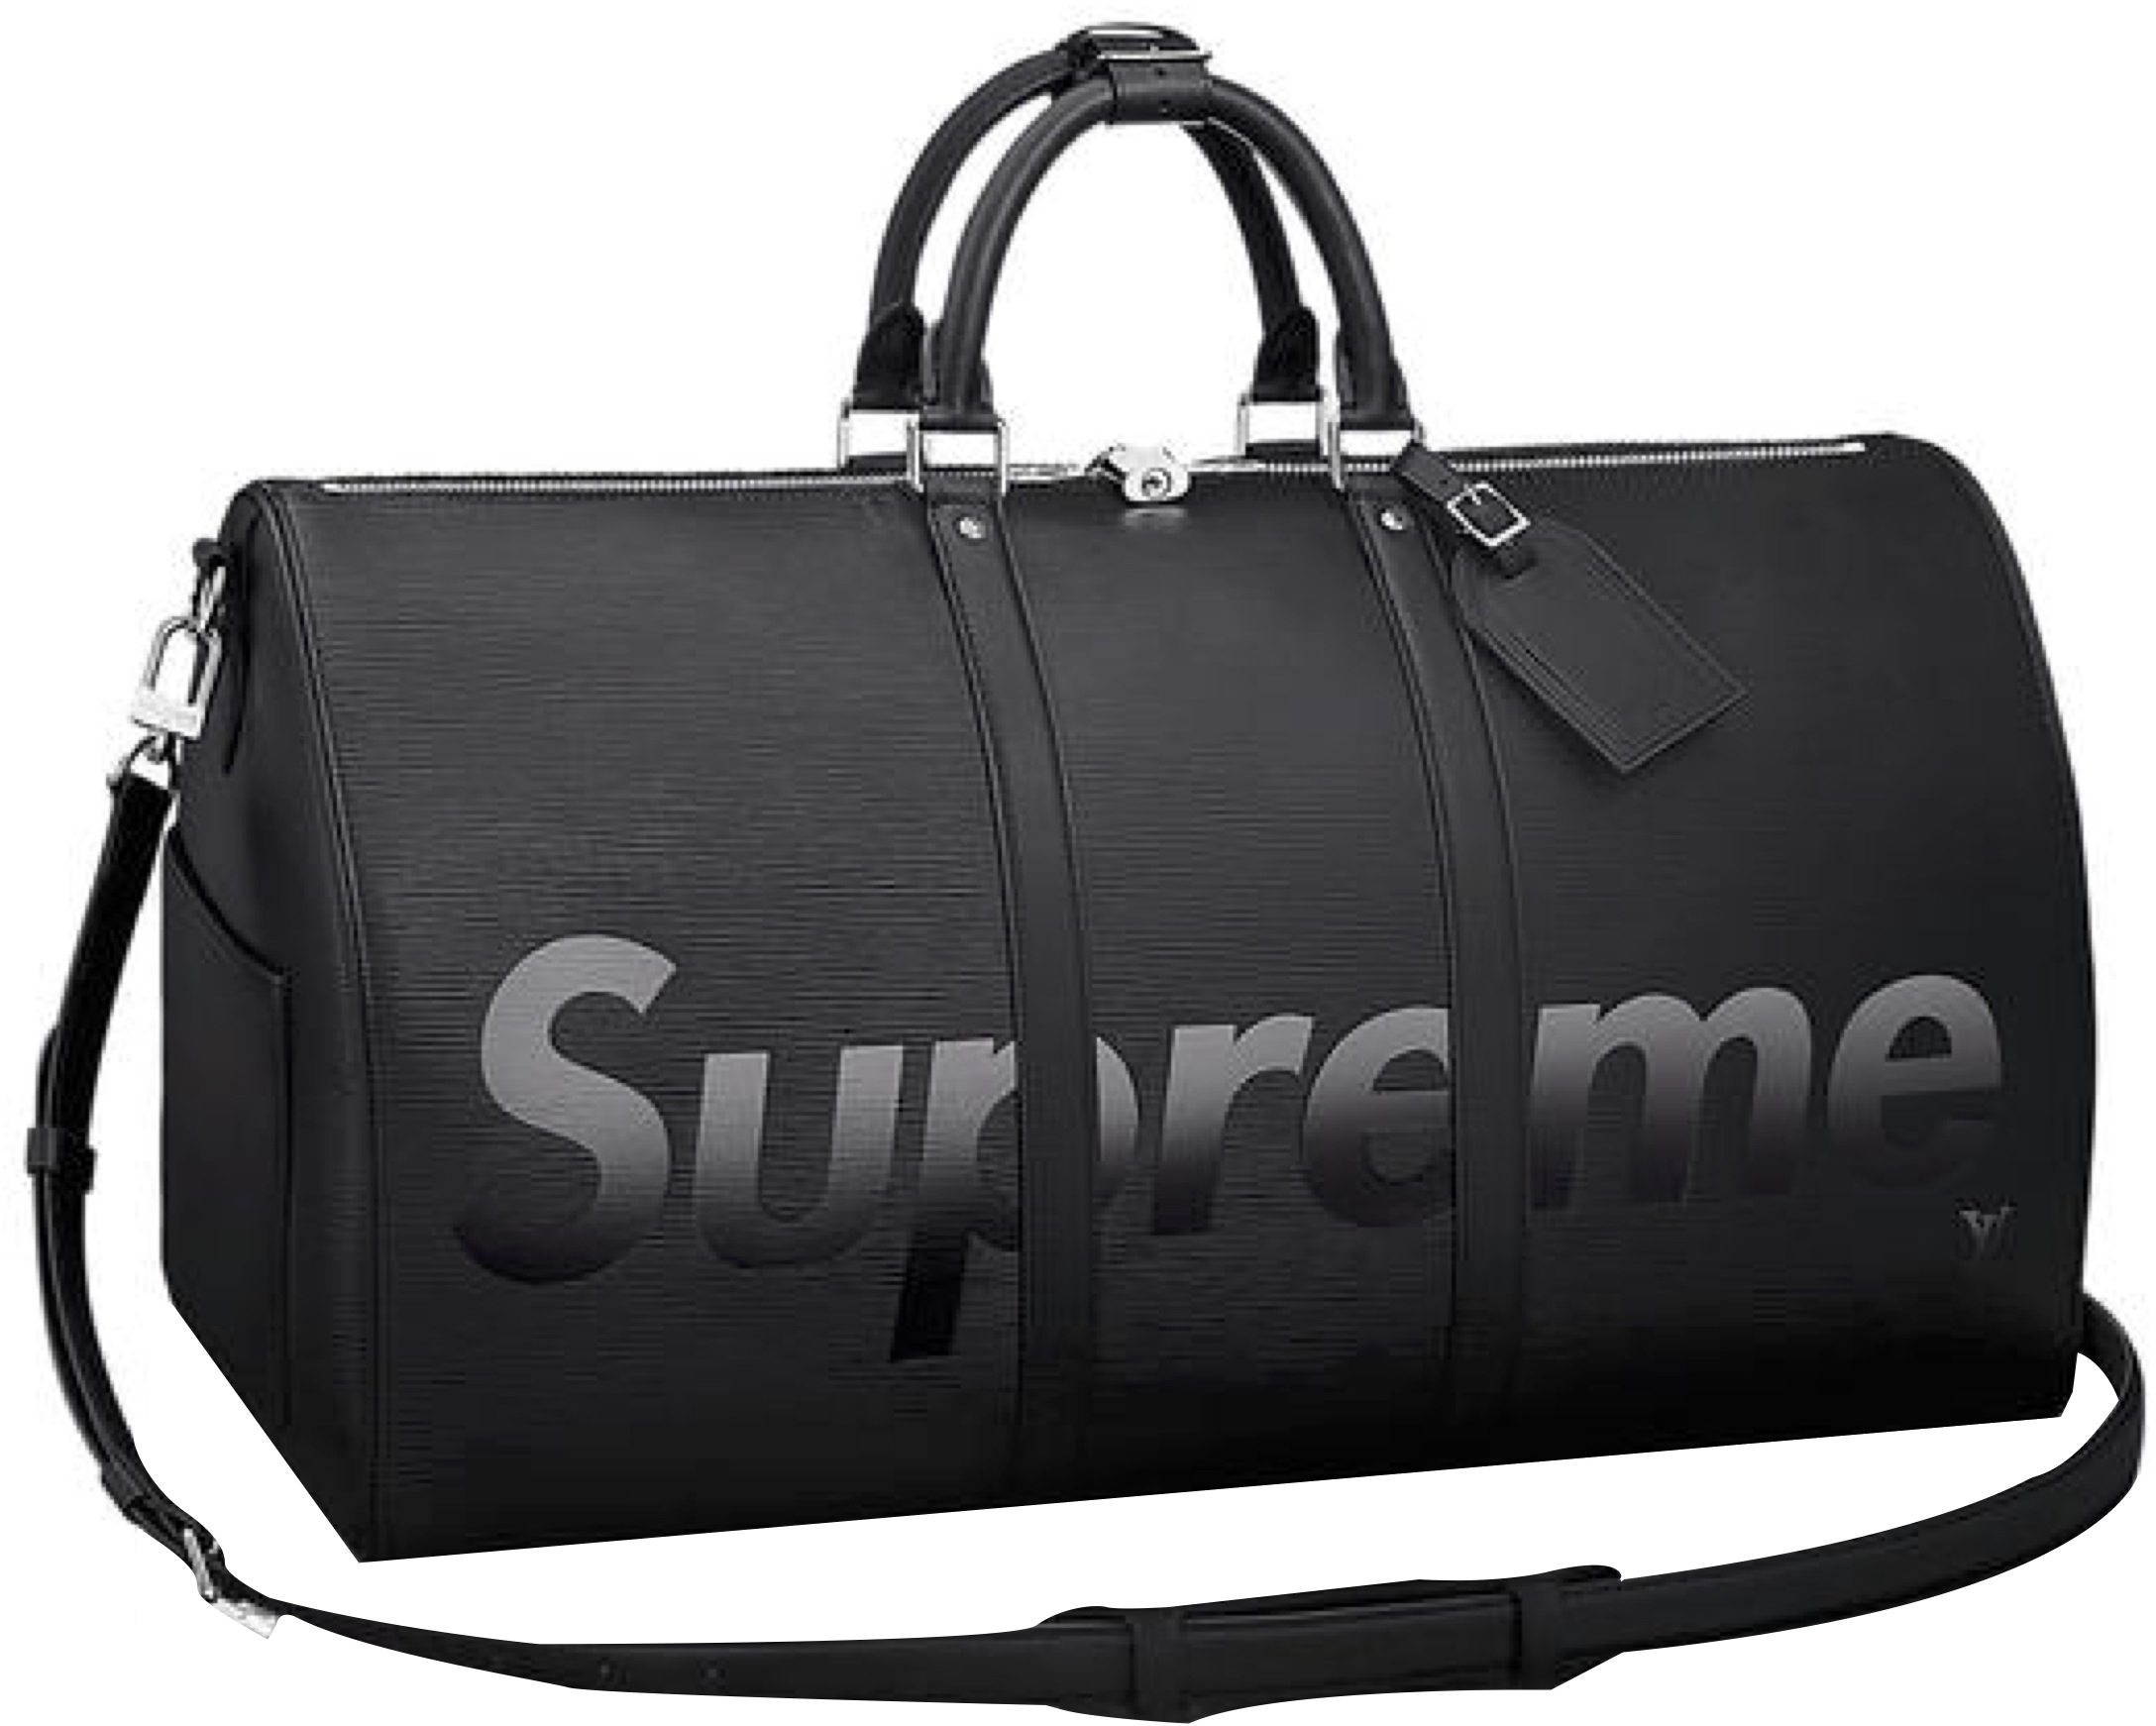 louis vuitton supreme bag black